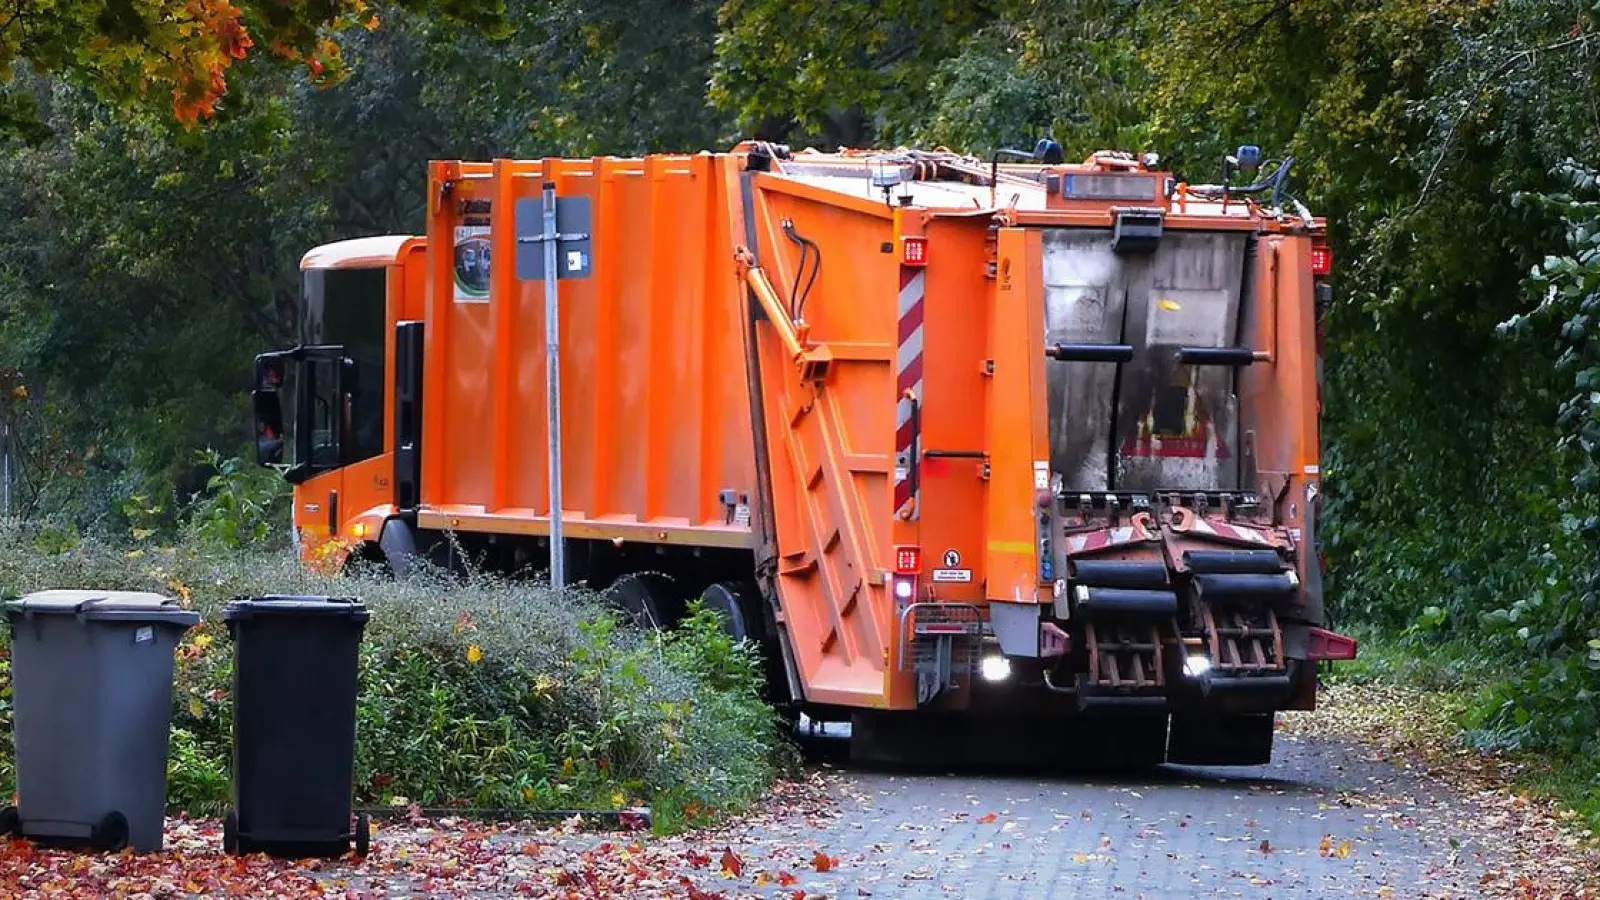 Müllmobil im Landkreis Bayreuth unterwegs: Hier hält es an (Foto: inBayreuth.de)